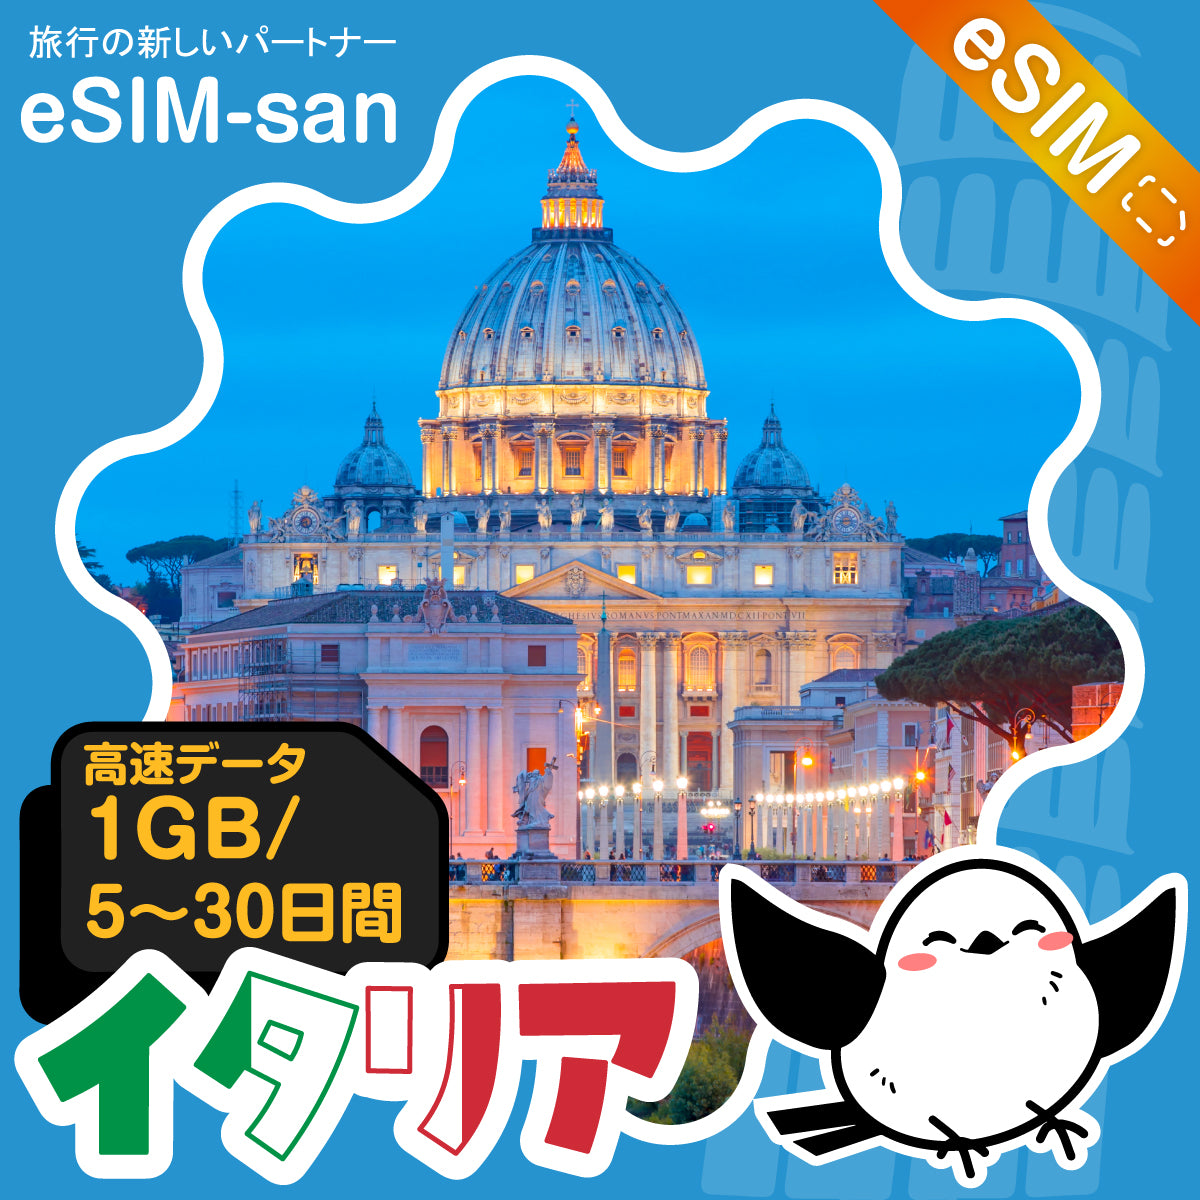 イタリアeSIMの1GB/dayプラン画像_eSIM-san